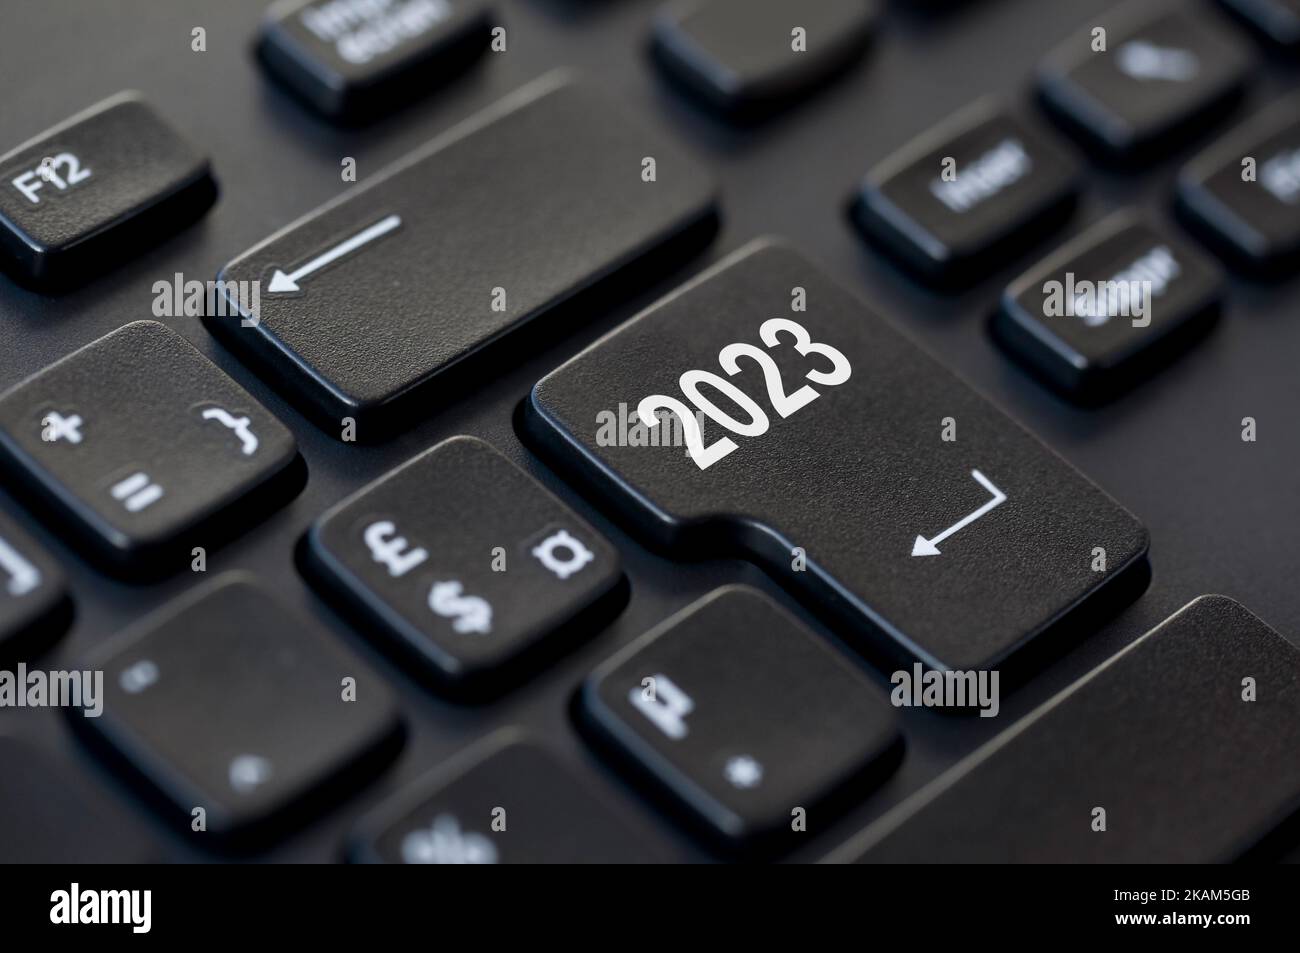 2023 escrito en la tecla intro del teclado de un ordenador, ilustración de inicio de año nuevo de negocios Foto de stock